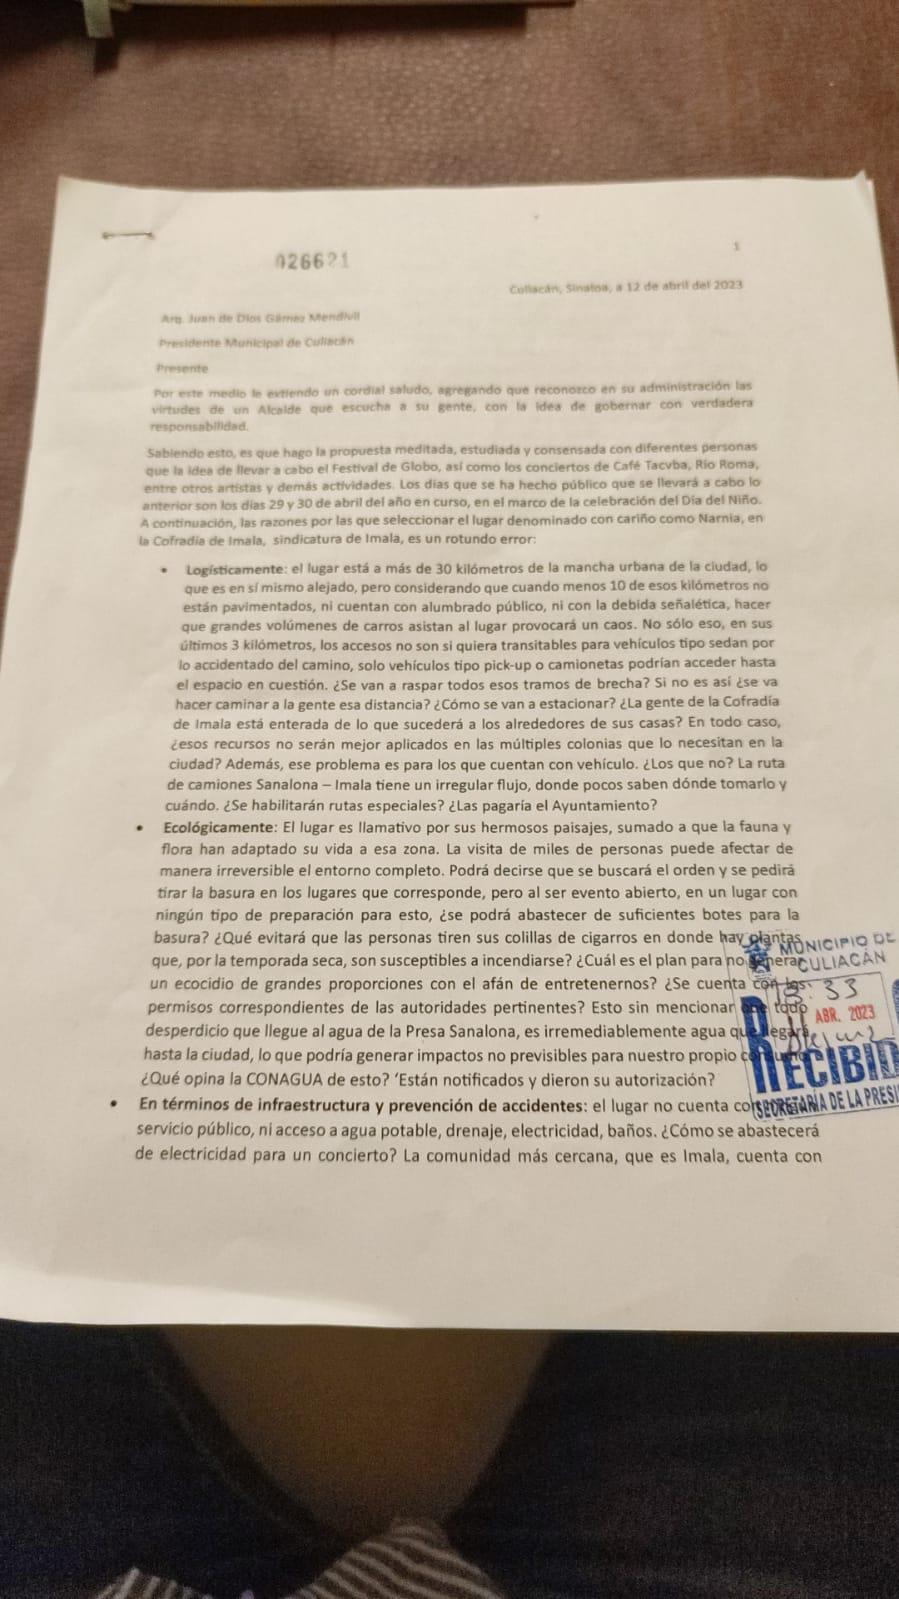 $!Los activistas entregaron este oficio al Alcalde de Culiacán, Juan de Dios Gámez Mendívil, el 11 de abril.